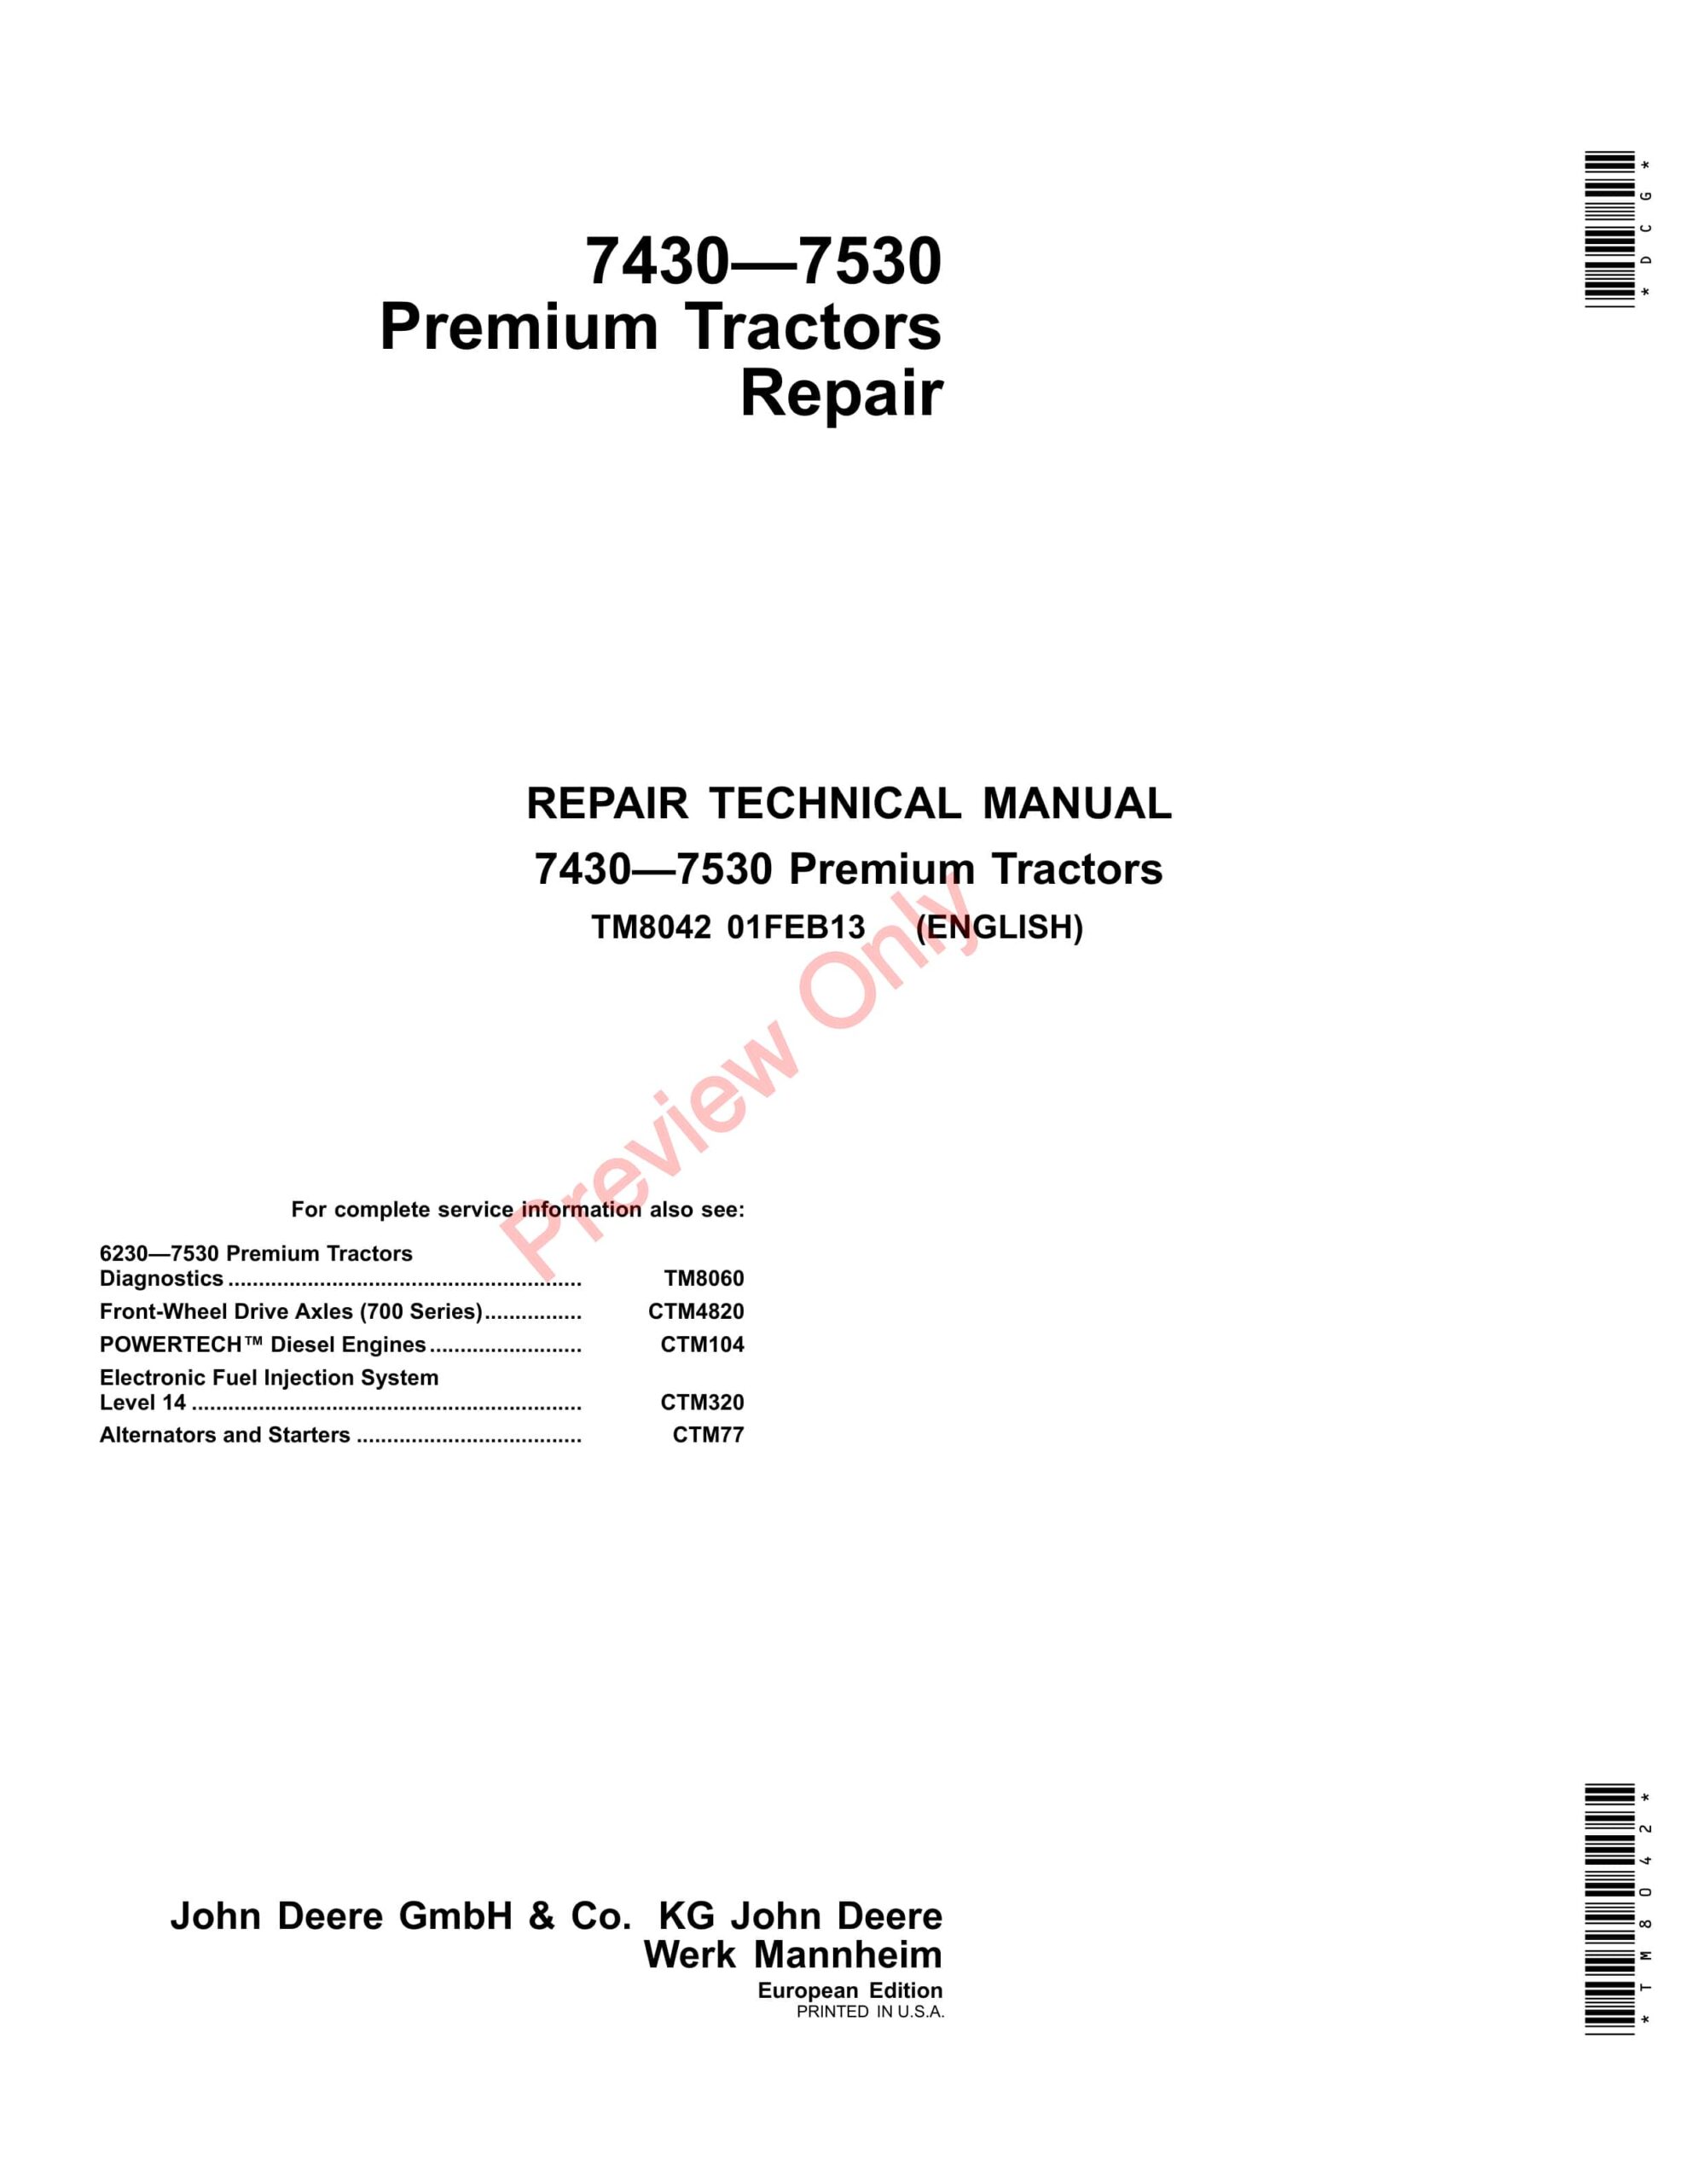 John Deere 7430 and 7530 Premium Tractors Repair Technical Manual TM8042 01FEB13-1